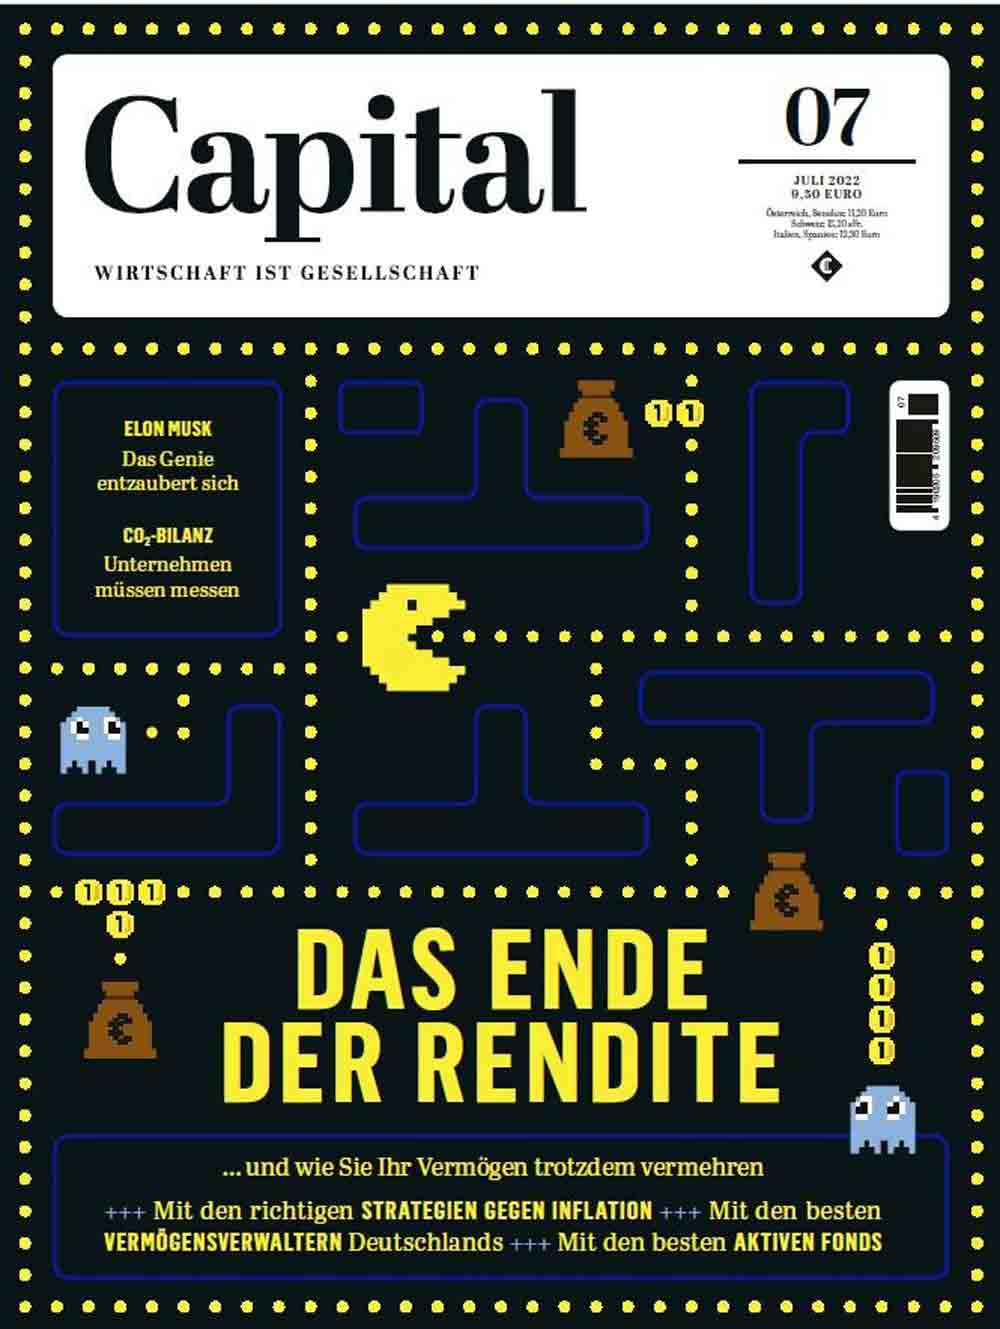 Capital, Vonovia Chef Buch rudert in Inflations Debatte zurück